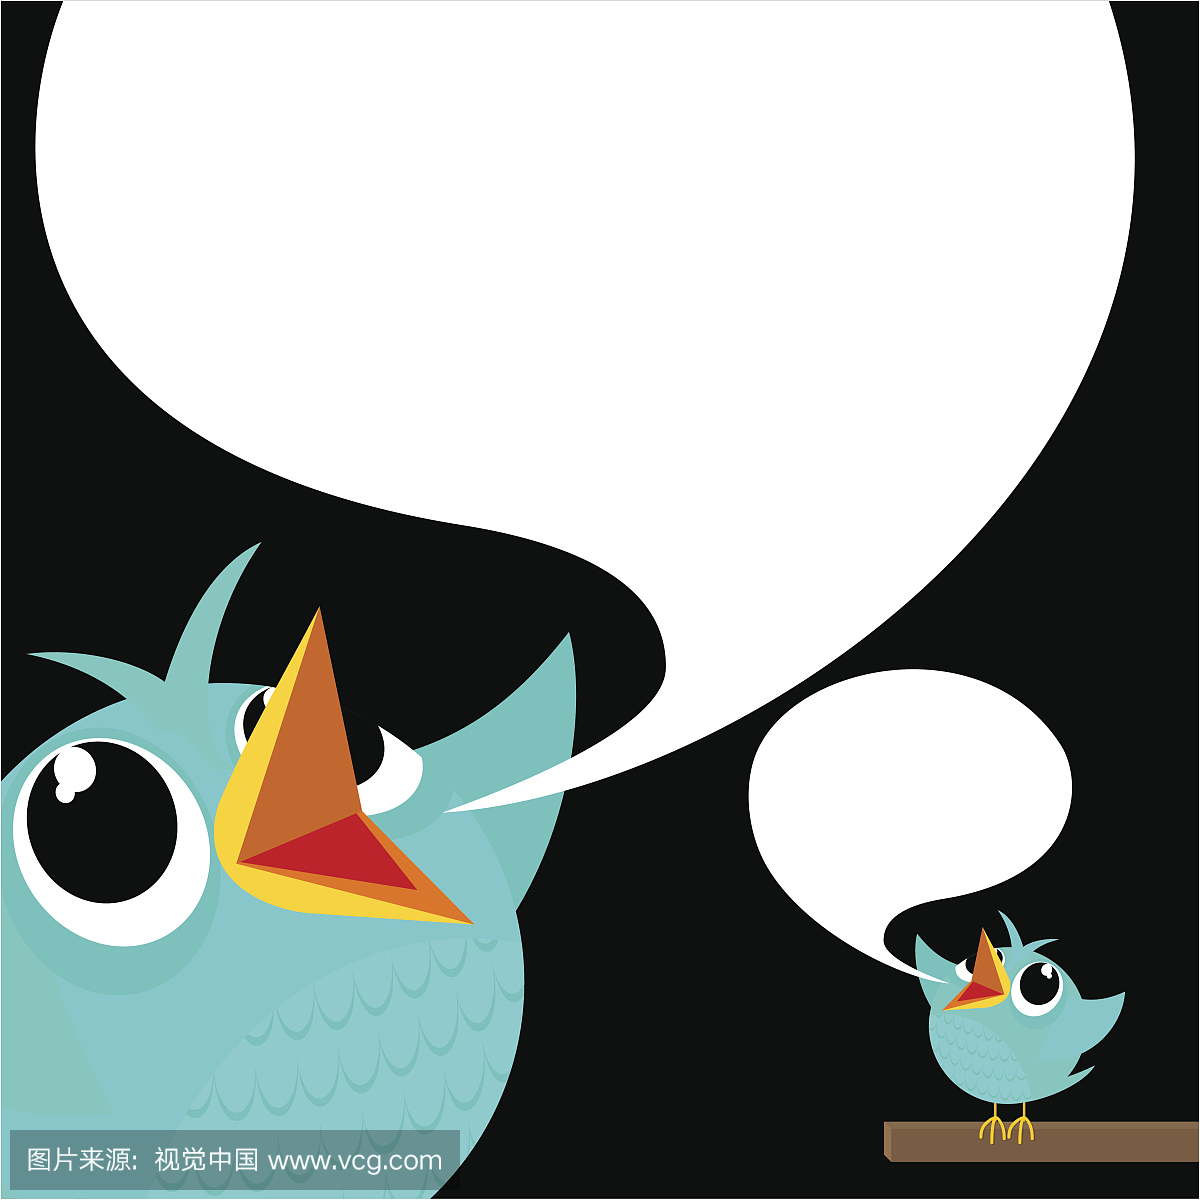 鸟,鸣叫,蓝鸟,饲料,社交媒体,文字,跟随,卡通,